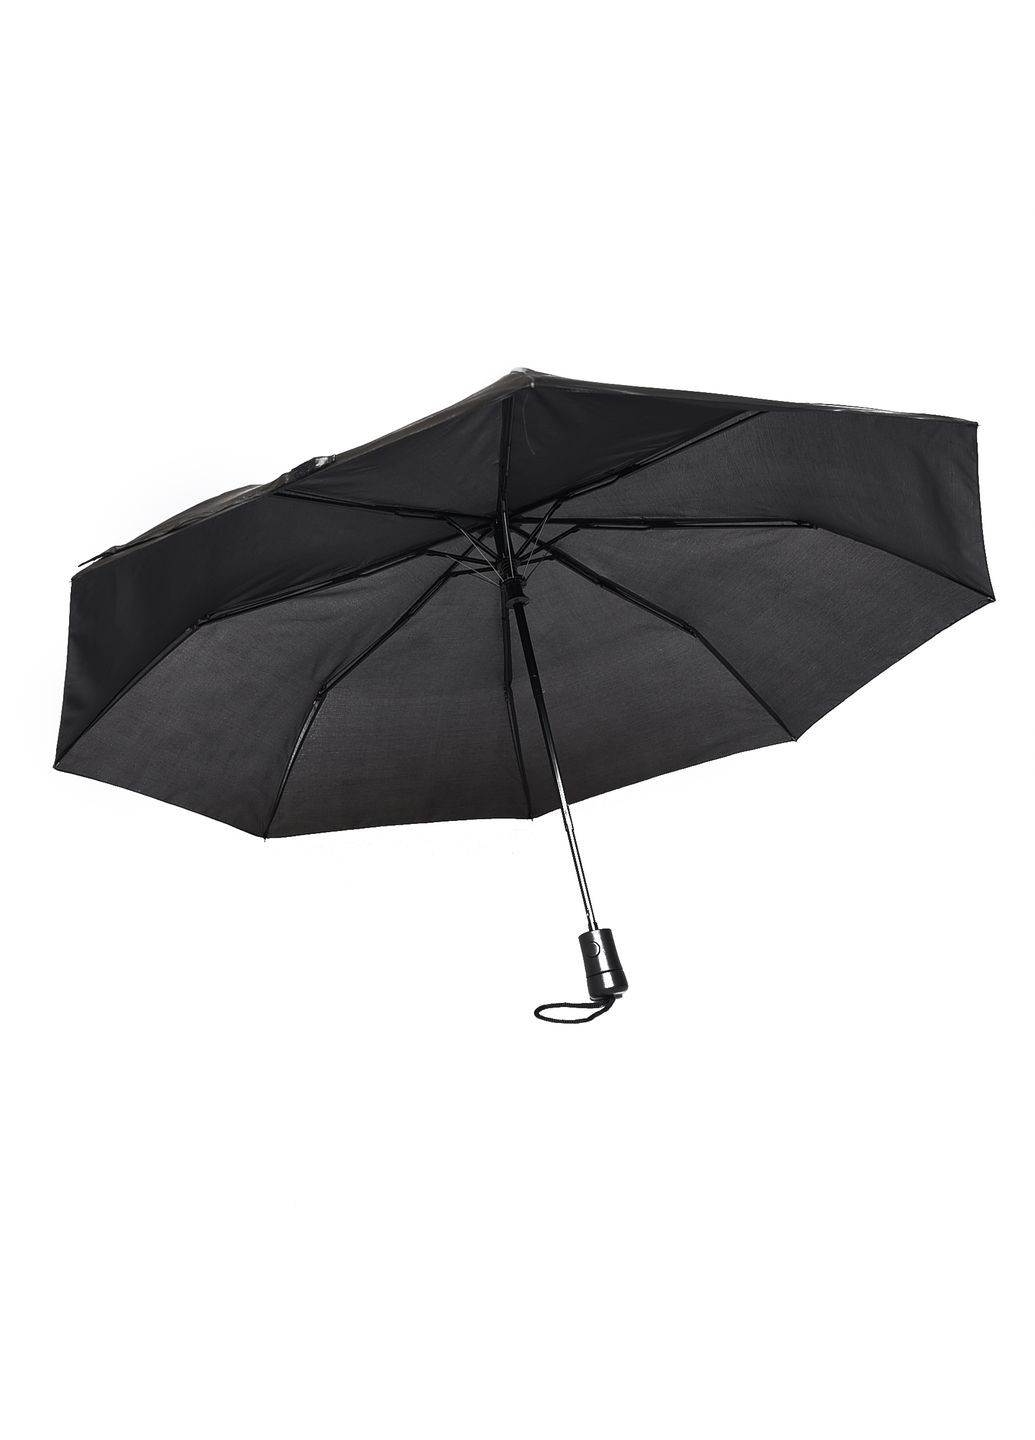 Зонт полуавтомат черного цвета Let's Shop (269692861)